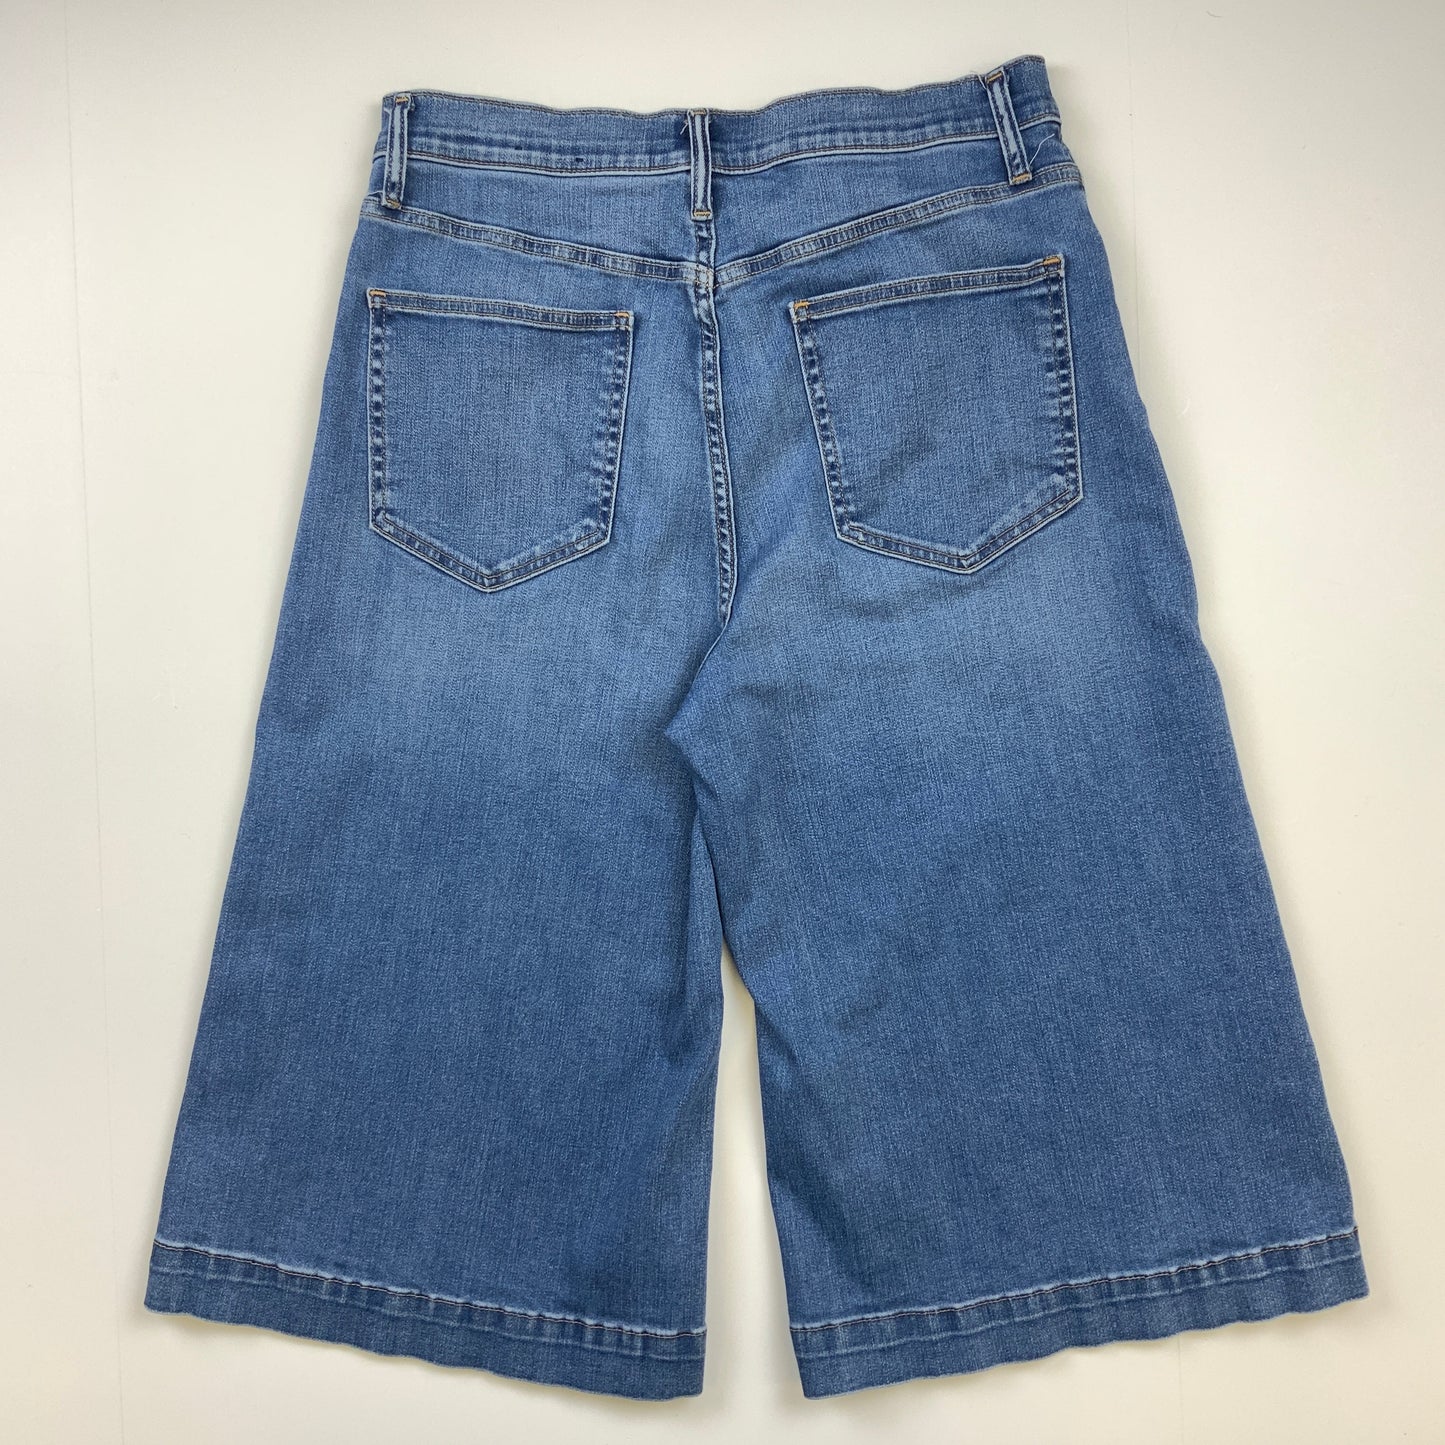 Blue Denim Shorts Gap, Size 12